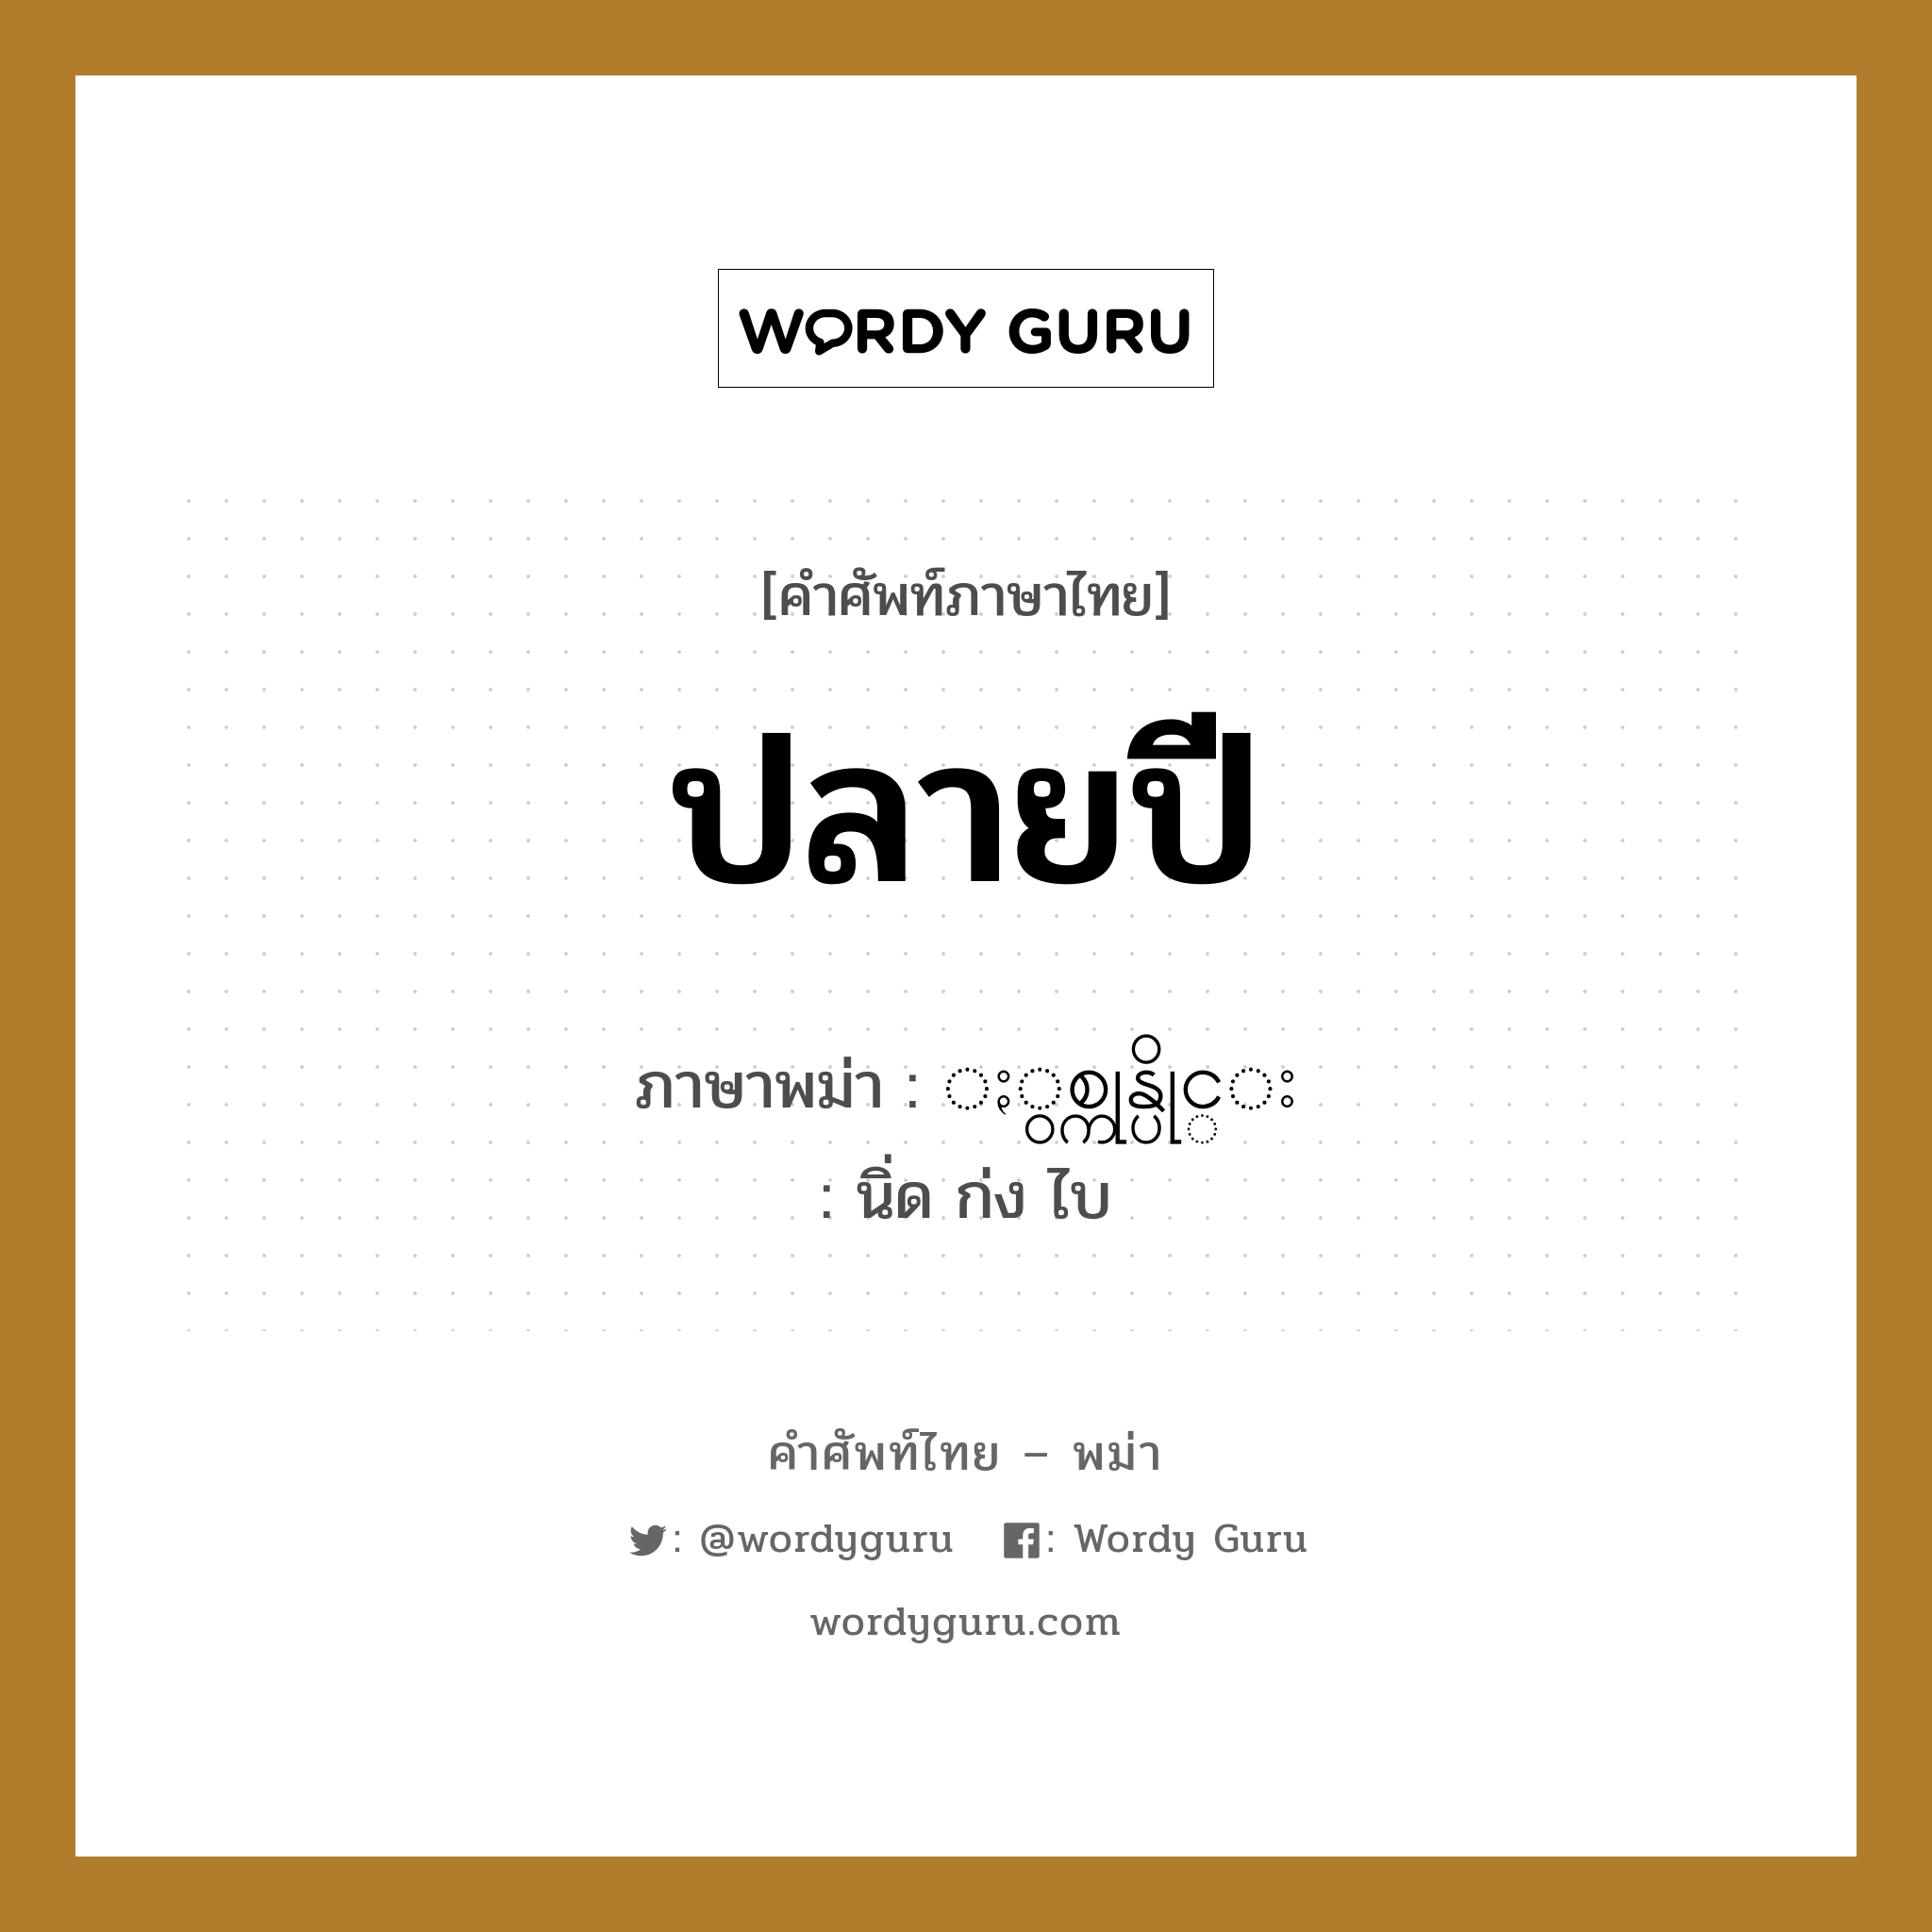 ปลายปี ภาษาพม่าคืออะไร, คำศัพท์ภาษาไทย - พม่า ปลายปี ภาษาพม่า ႏွစ္ကုန္ပိုင္း หมวด หมวดวัน เดือน ปี นิ่ด ก่ง ไบ หมวด หมวดวัน เดือน ปี